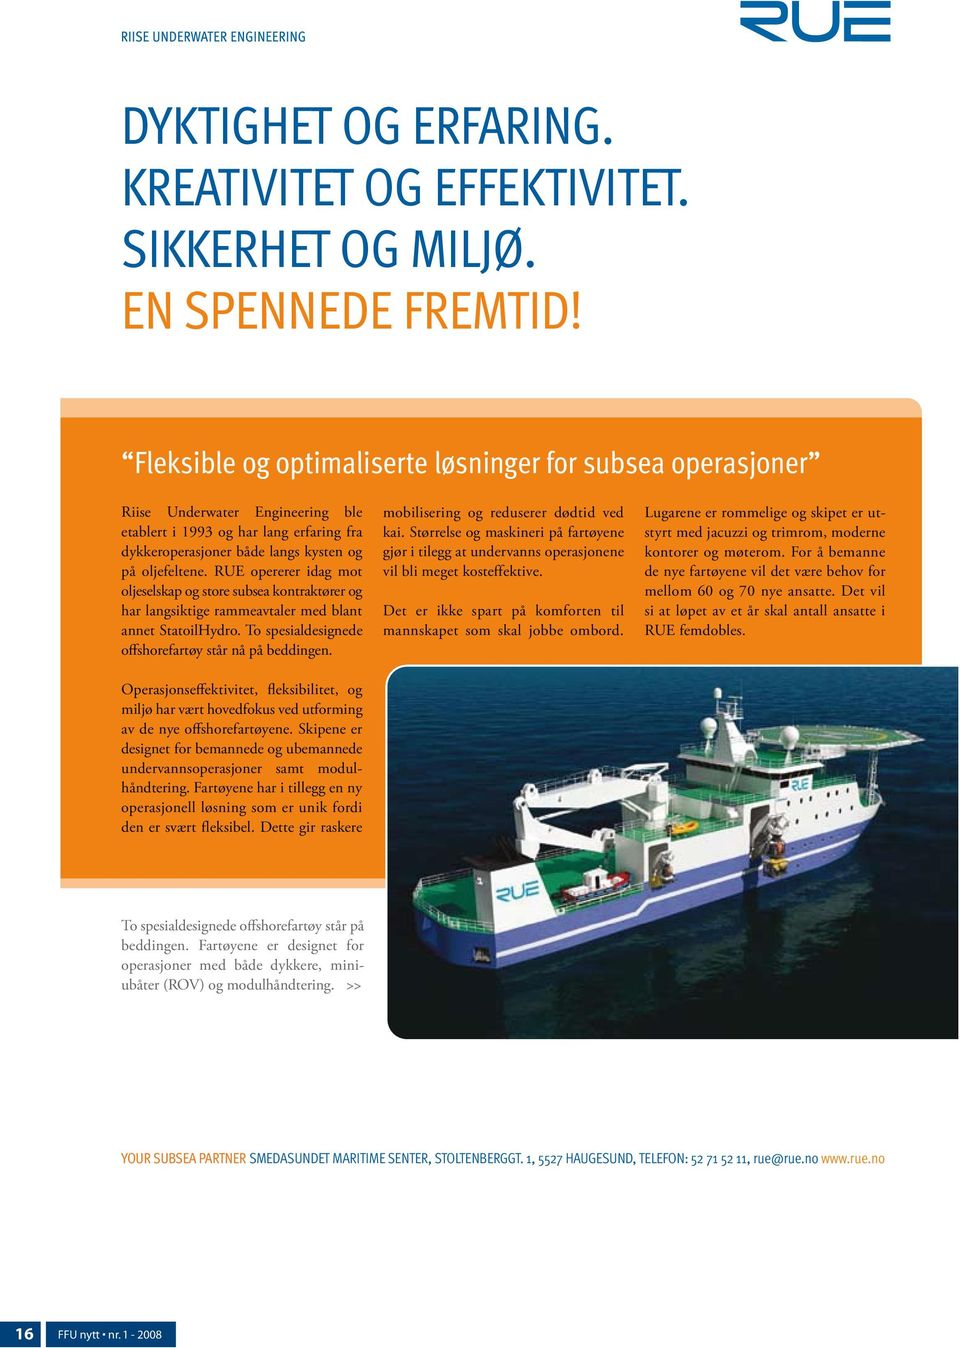 RUE opererer idag mot oljeselskap og store subsea kontraktører og har langsiktige rammeavtaler med blant annet StatoilHydro. To spesialdesignede offshorefartøy står nå på beddingen.